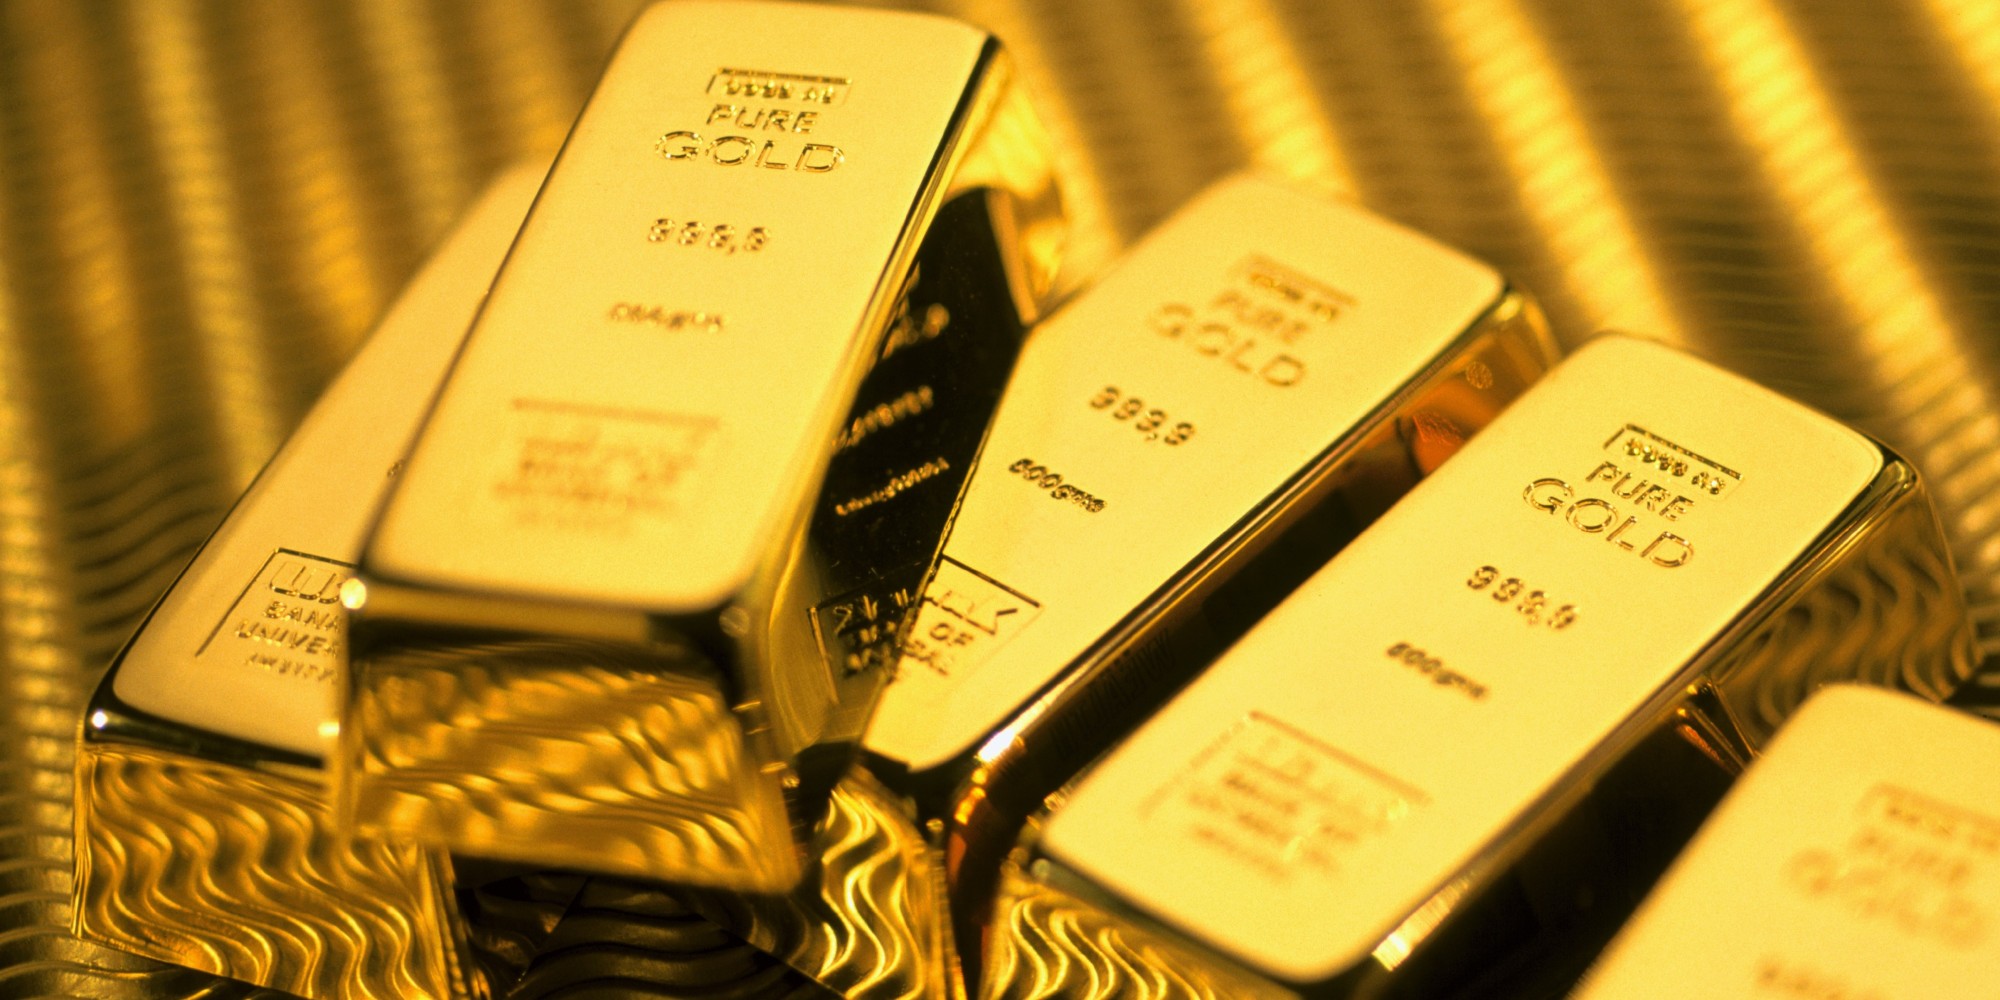 Hiện chênh lệch giữa giá vàng trong nước và giá vàng thế giới đang ở mức 2,5 triệu đồng/lượng